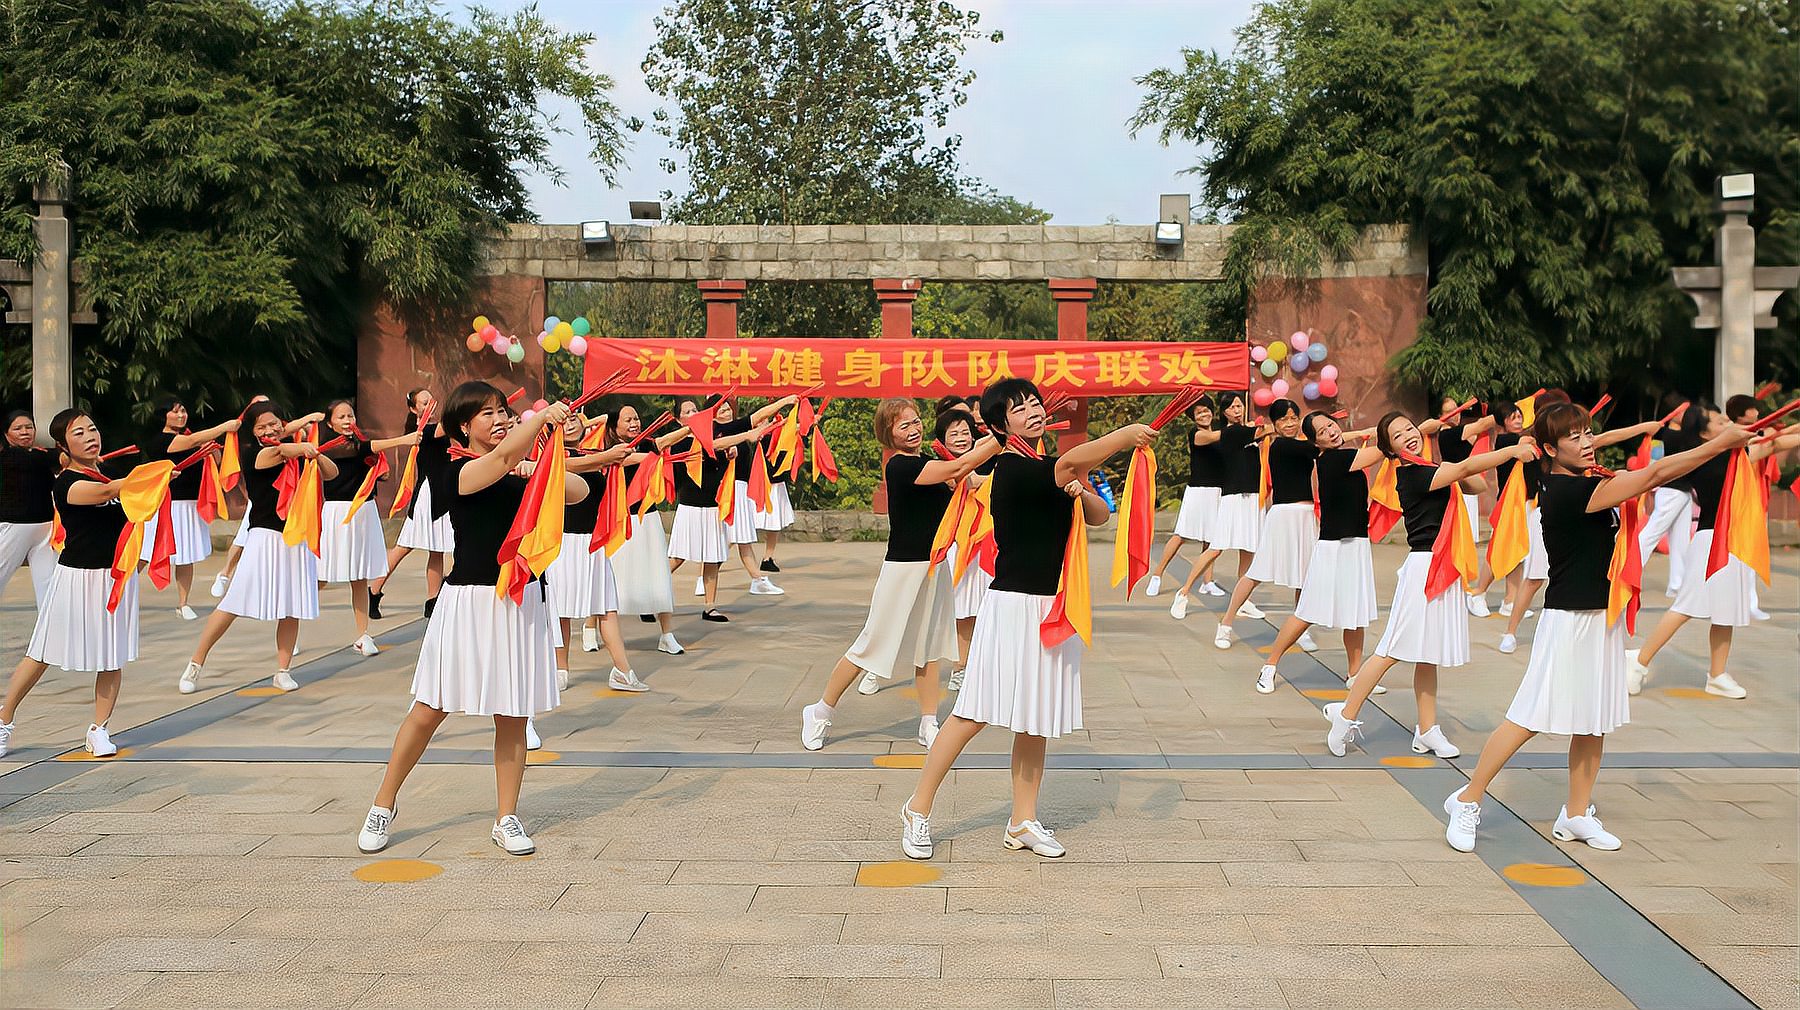 精彩筷子舞——《远方》,衡阳市沐林健身舞蹈队联欢开场舞蹈